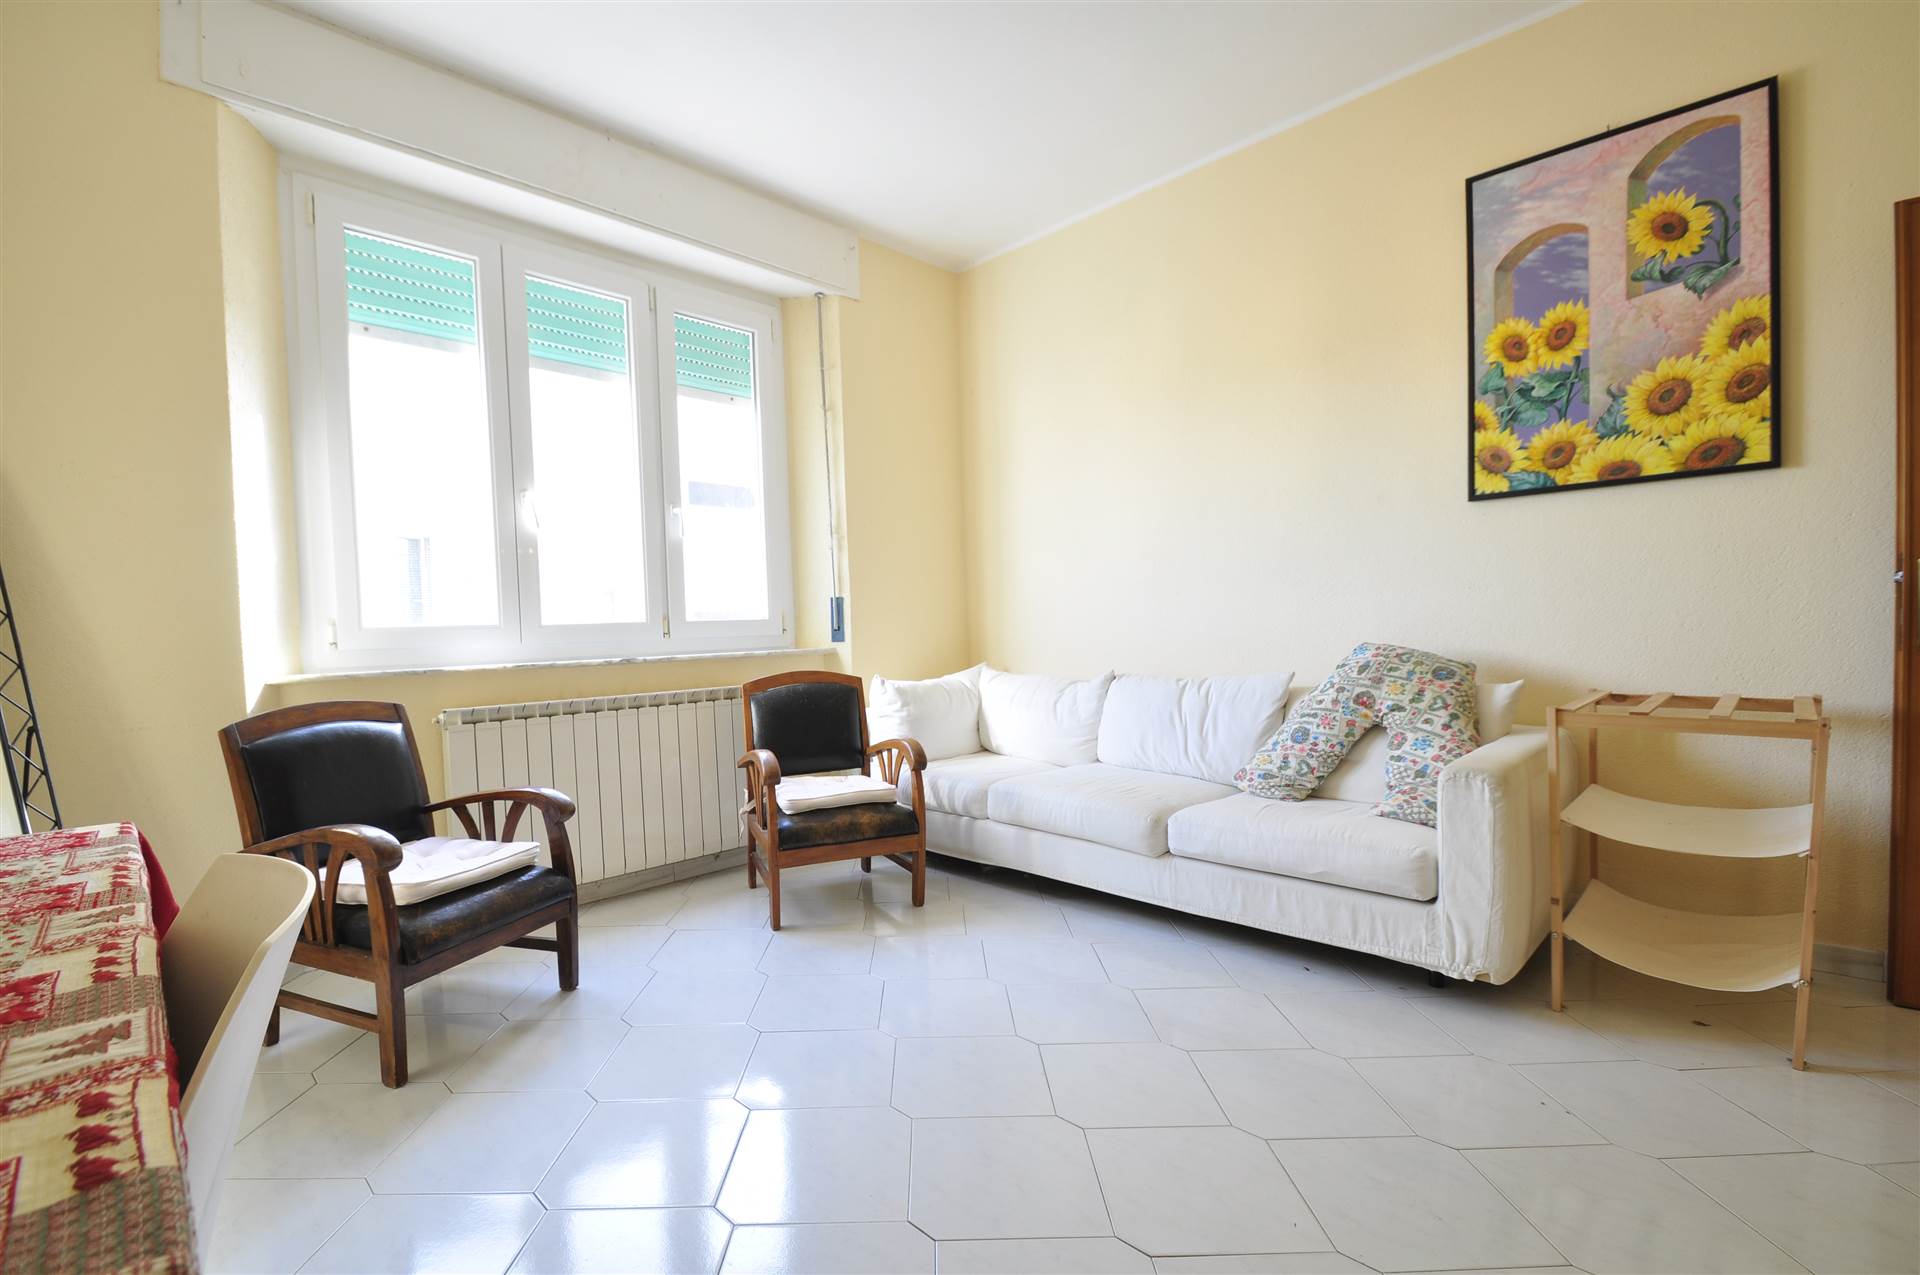 Appartamento in vendita a Suvereto, 4 locali, prezzo € 130.000 | PortaleAgenzieImmobiliari.it